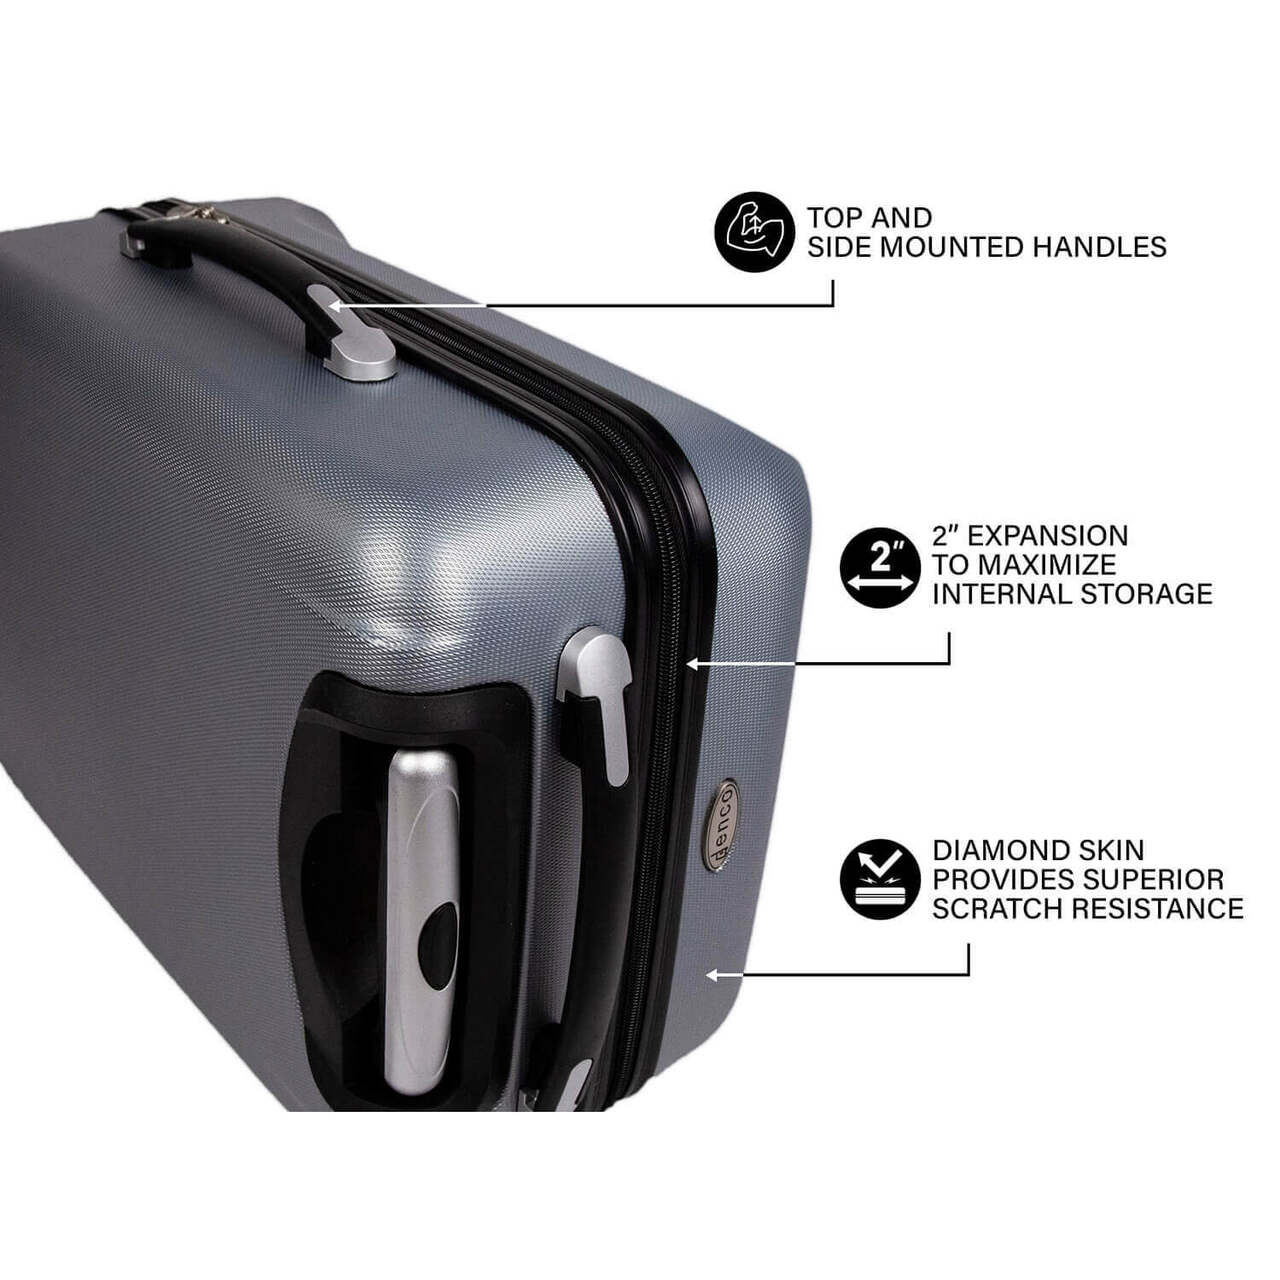 Orlando Magic 20" Hardcase Luggage Carry-on Spinner